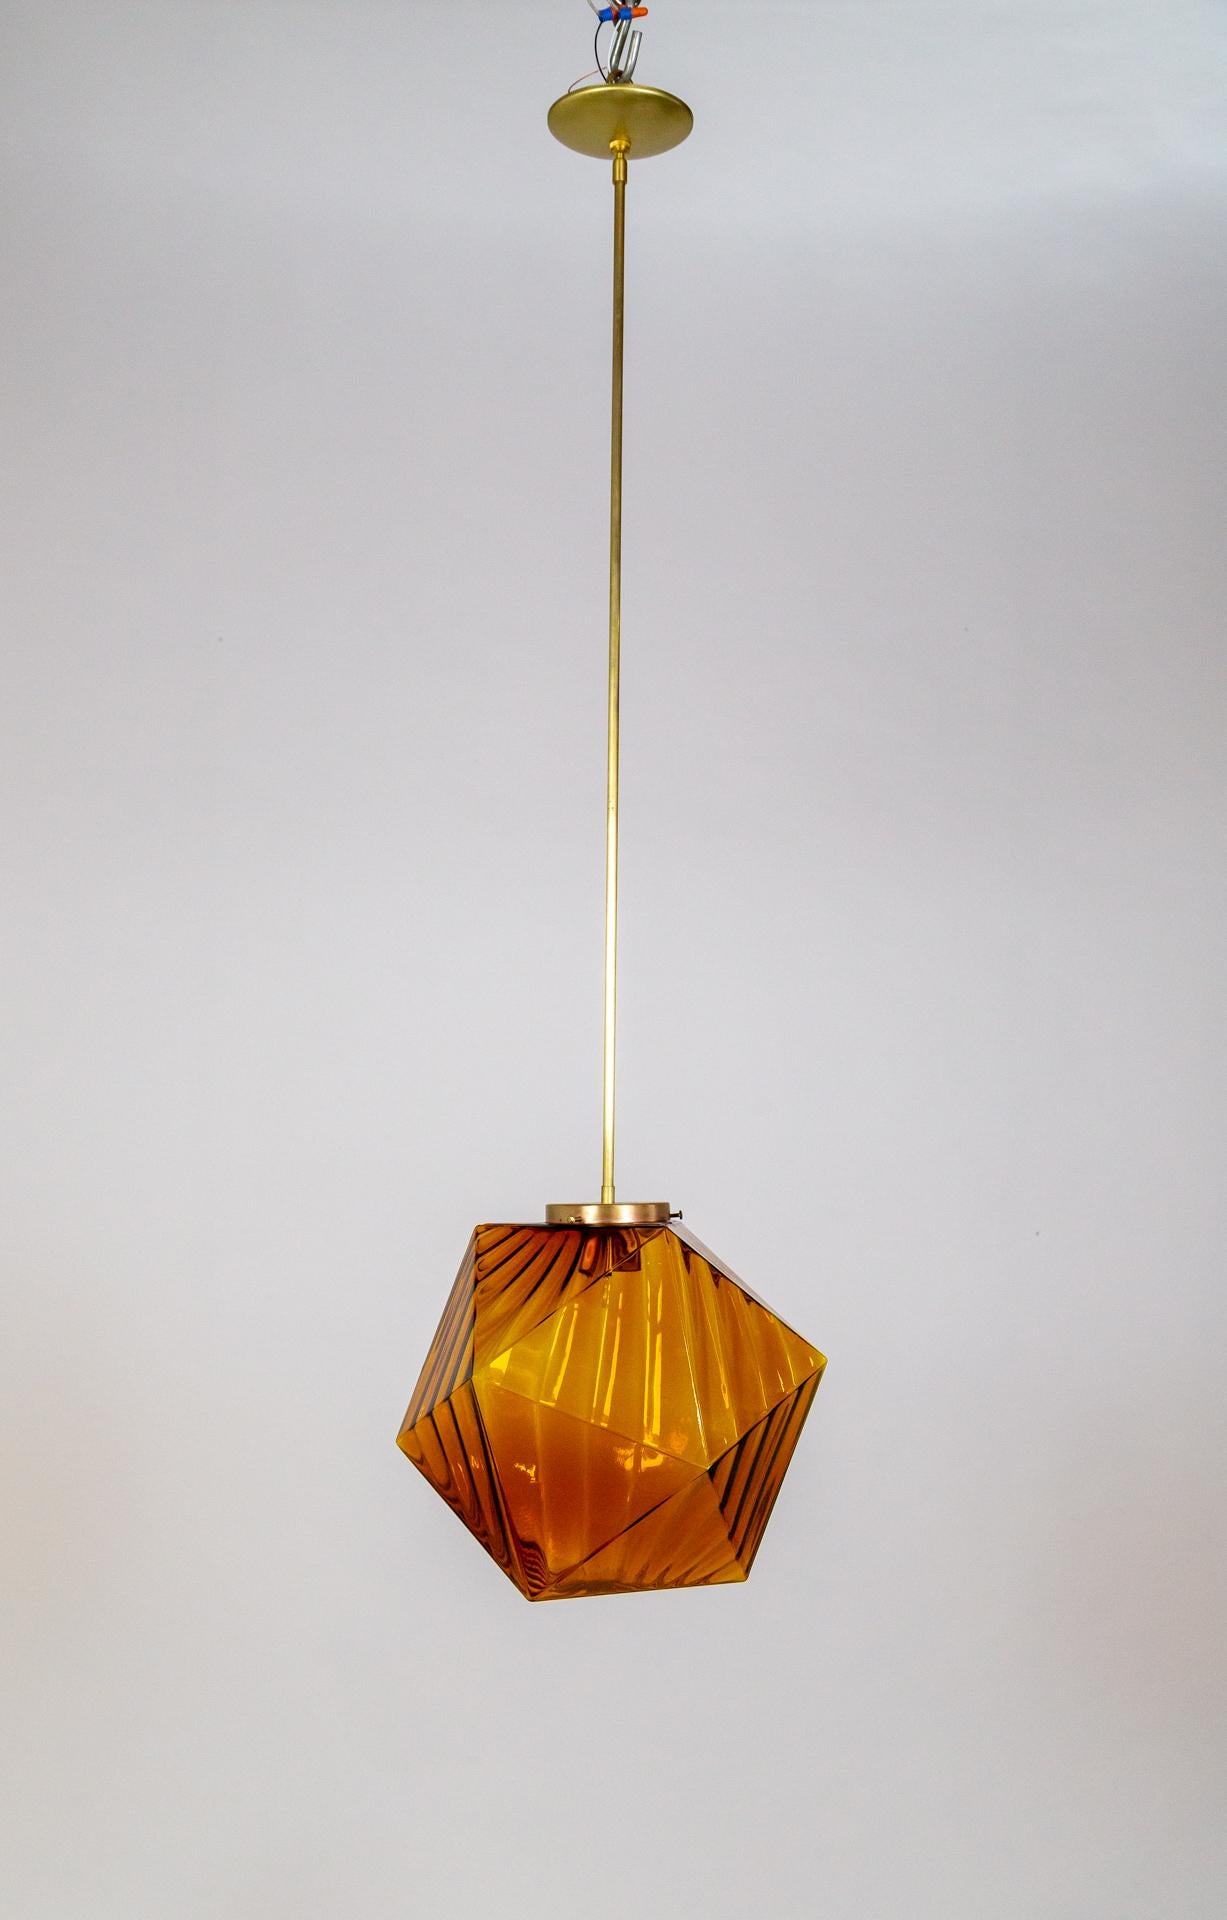 Eine Pendelleuchte aus den 1970er Jahren in Form eines Ikosaeders - eines 20-seitigen Polyeders.  Aus bernstein-orangefarbenem Glas mit gestreiftem Effekt, der wie ein Riffel aussieht.  Er hat einen langen, dünnen Messingstiel. Neu verkabelt. 
13